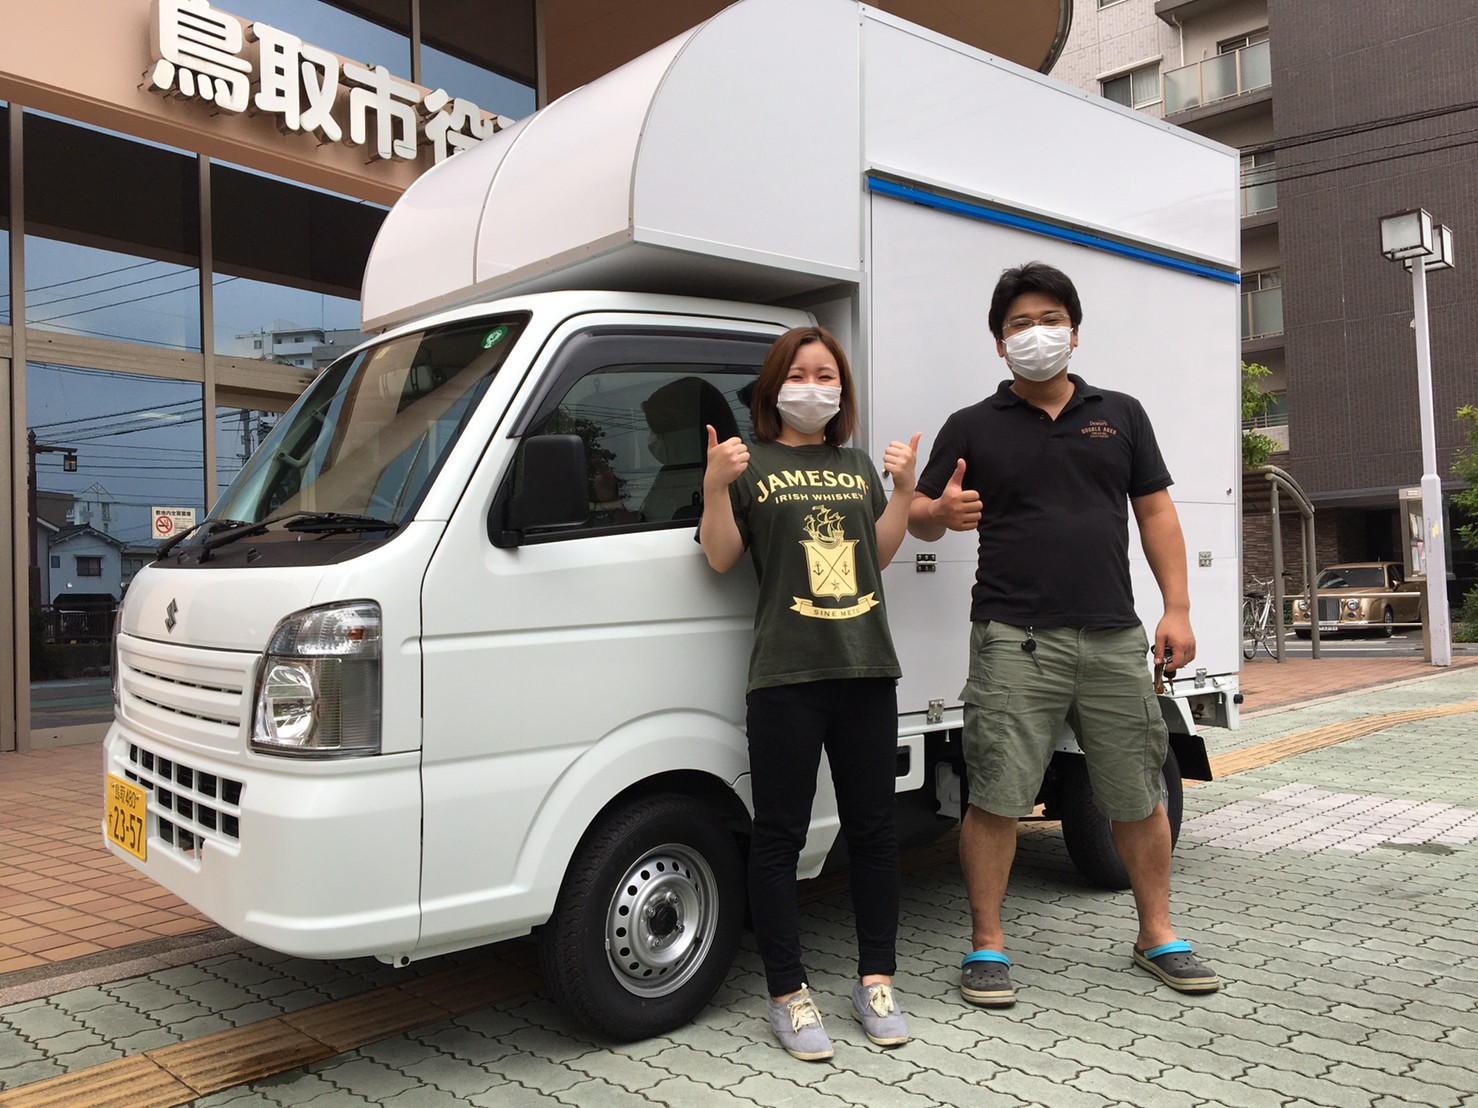 鳥取県岩美郡の伊藤様の カレー キッチンカーを製作しました 移動販売車 キッチンカー の製作 フードトラックカンパニー 公式